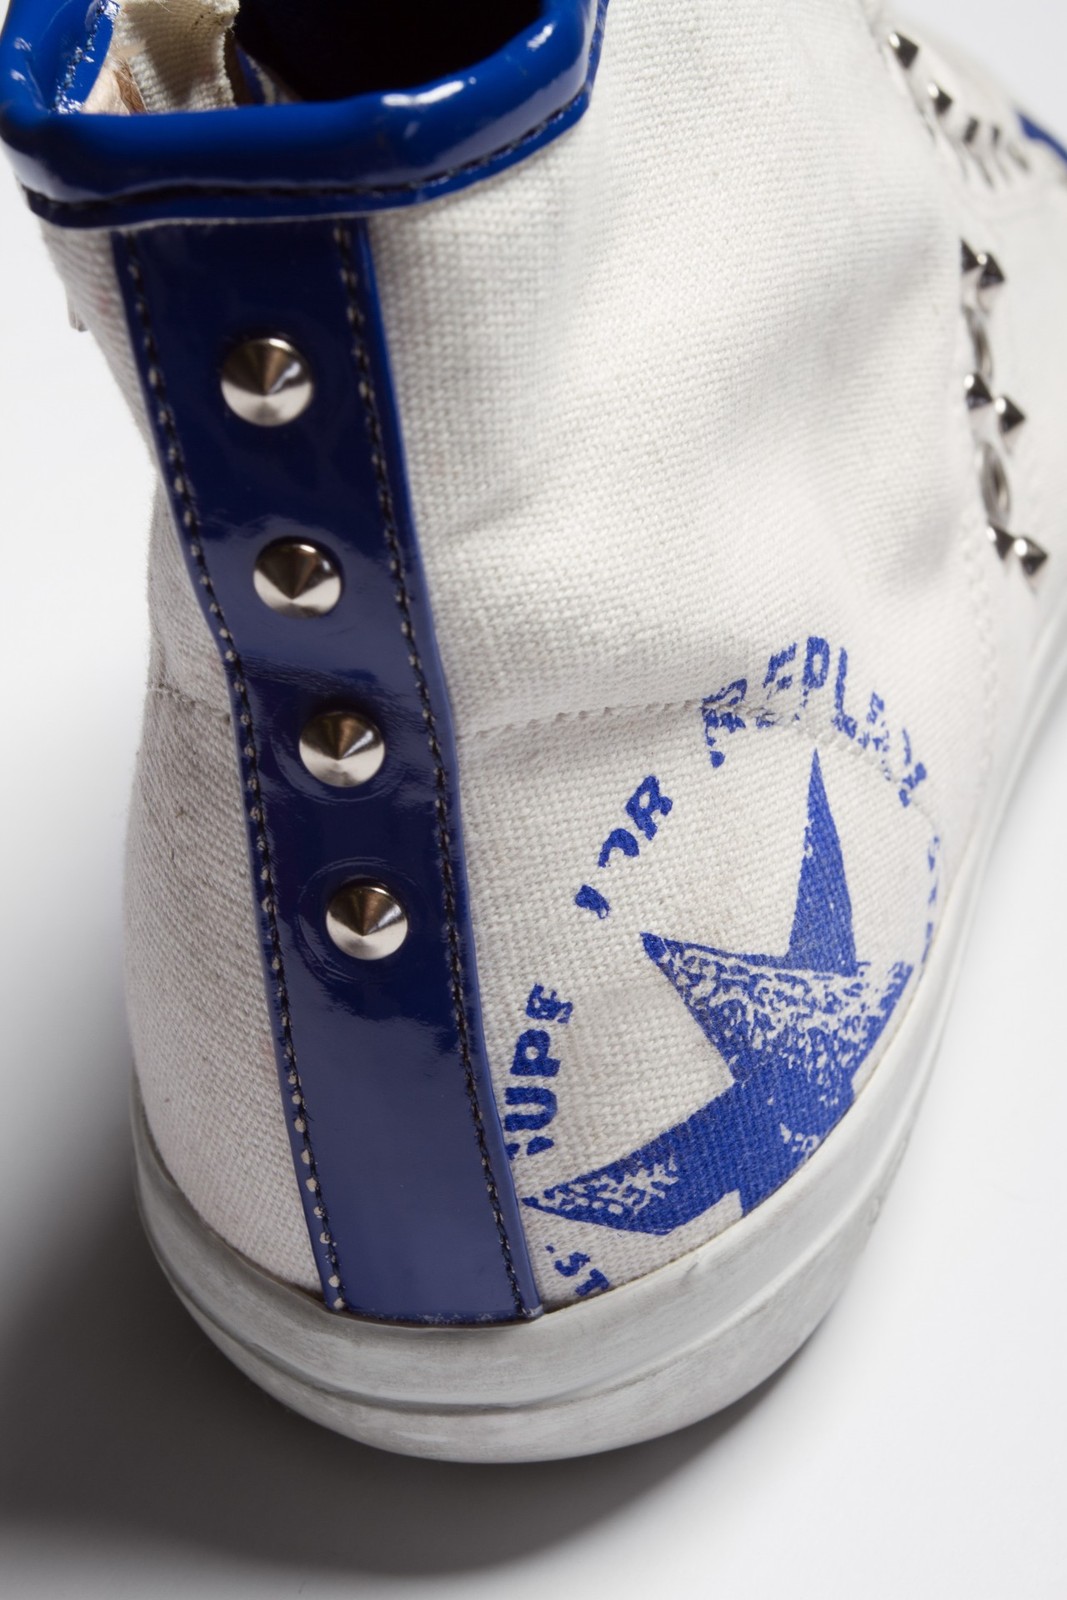 Replay kék-fehér szegecses tornacipő 2013.4.12 #39421 fotója